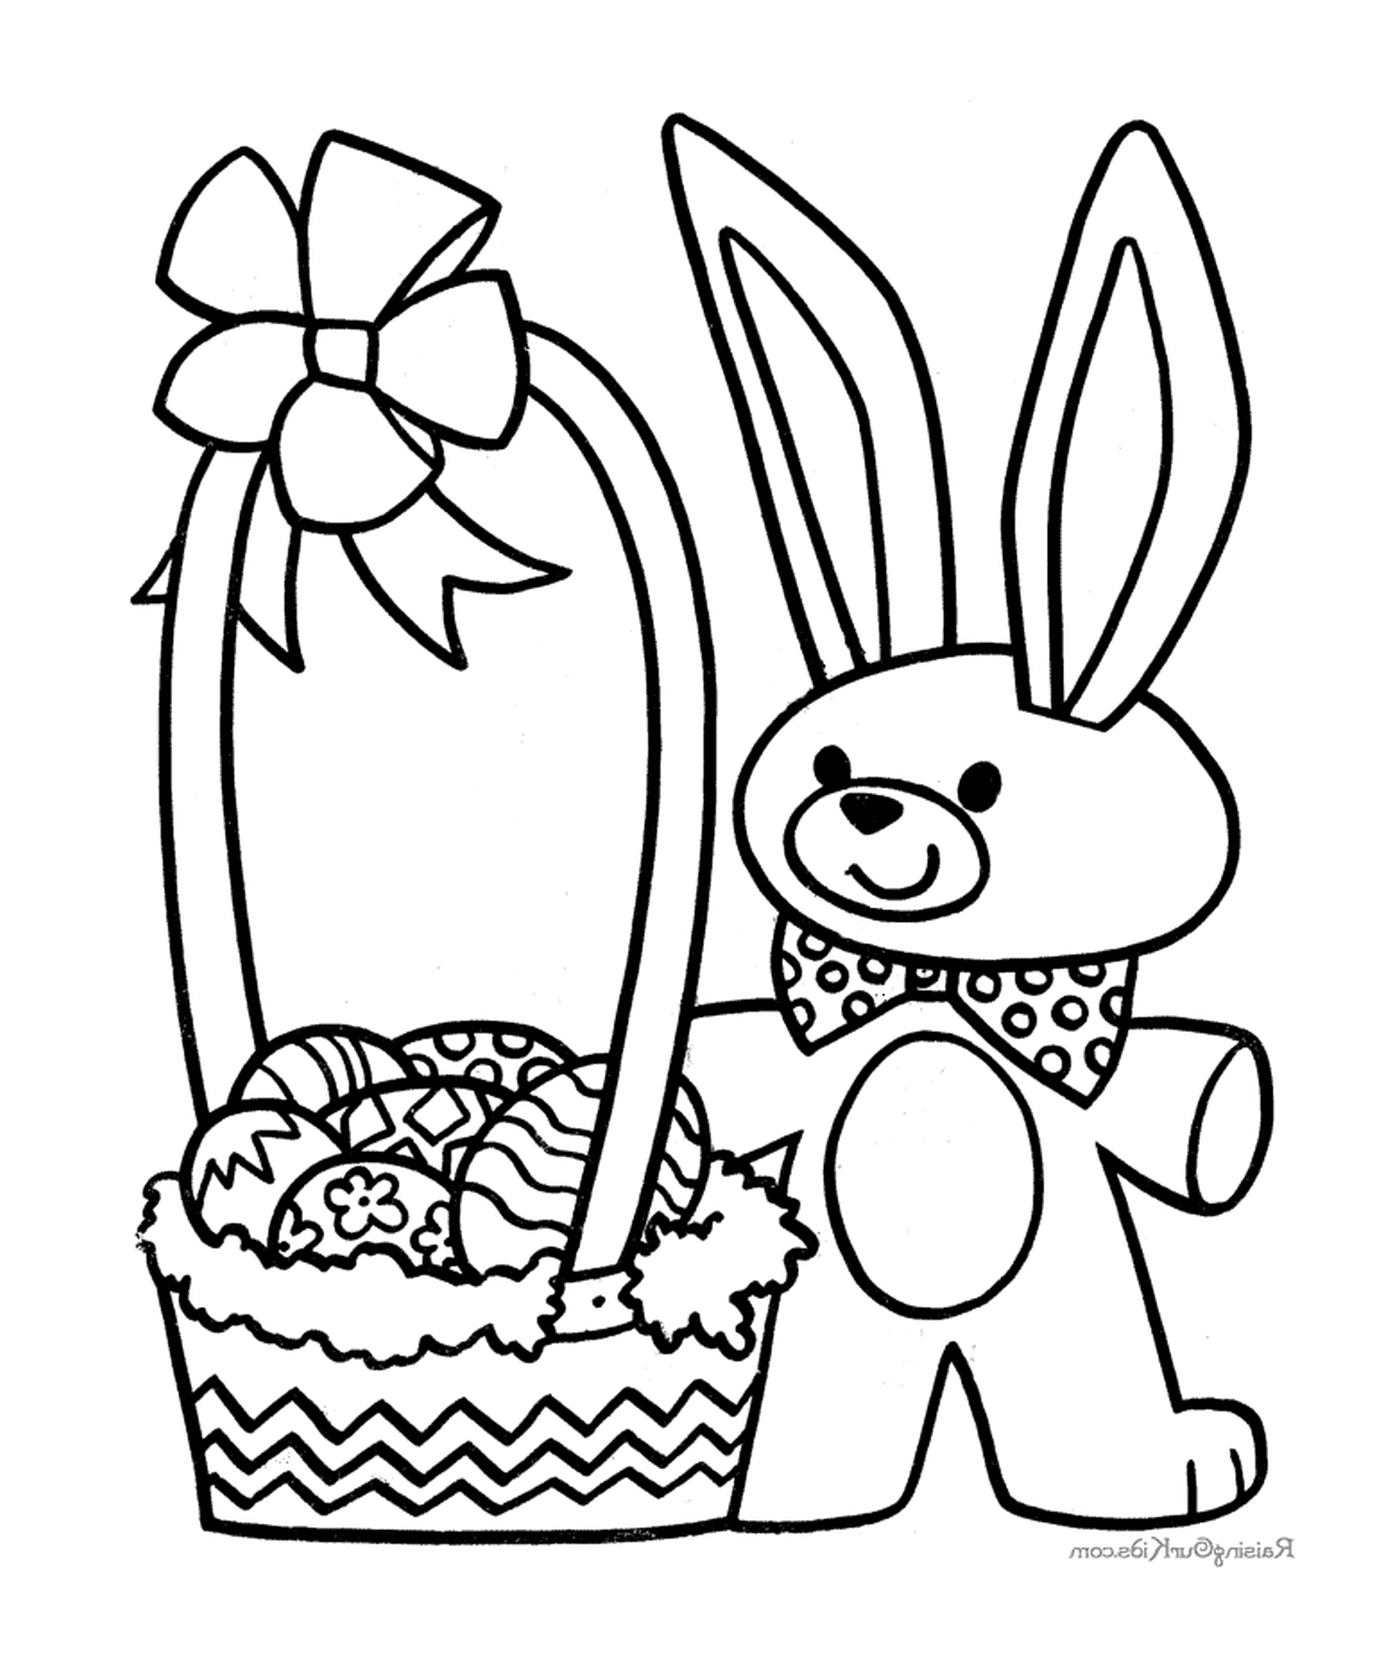  Пасхальный кролик с корзиной яиц 